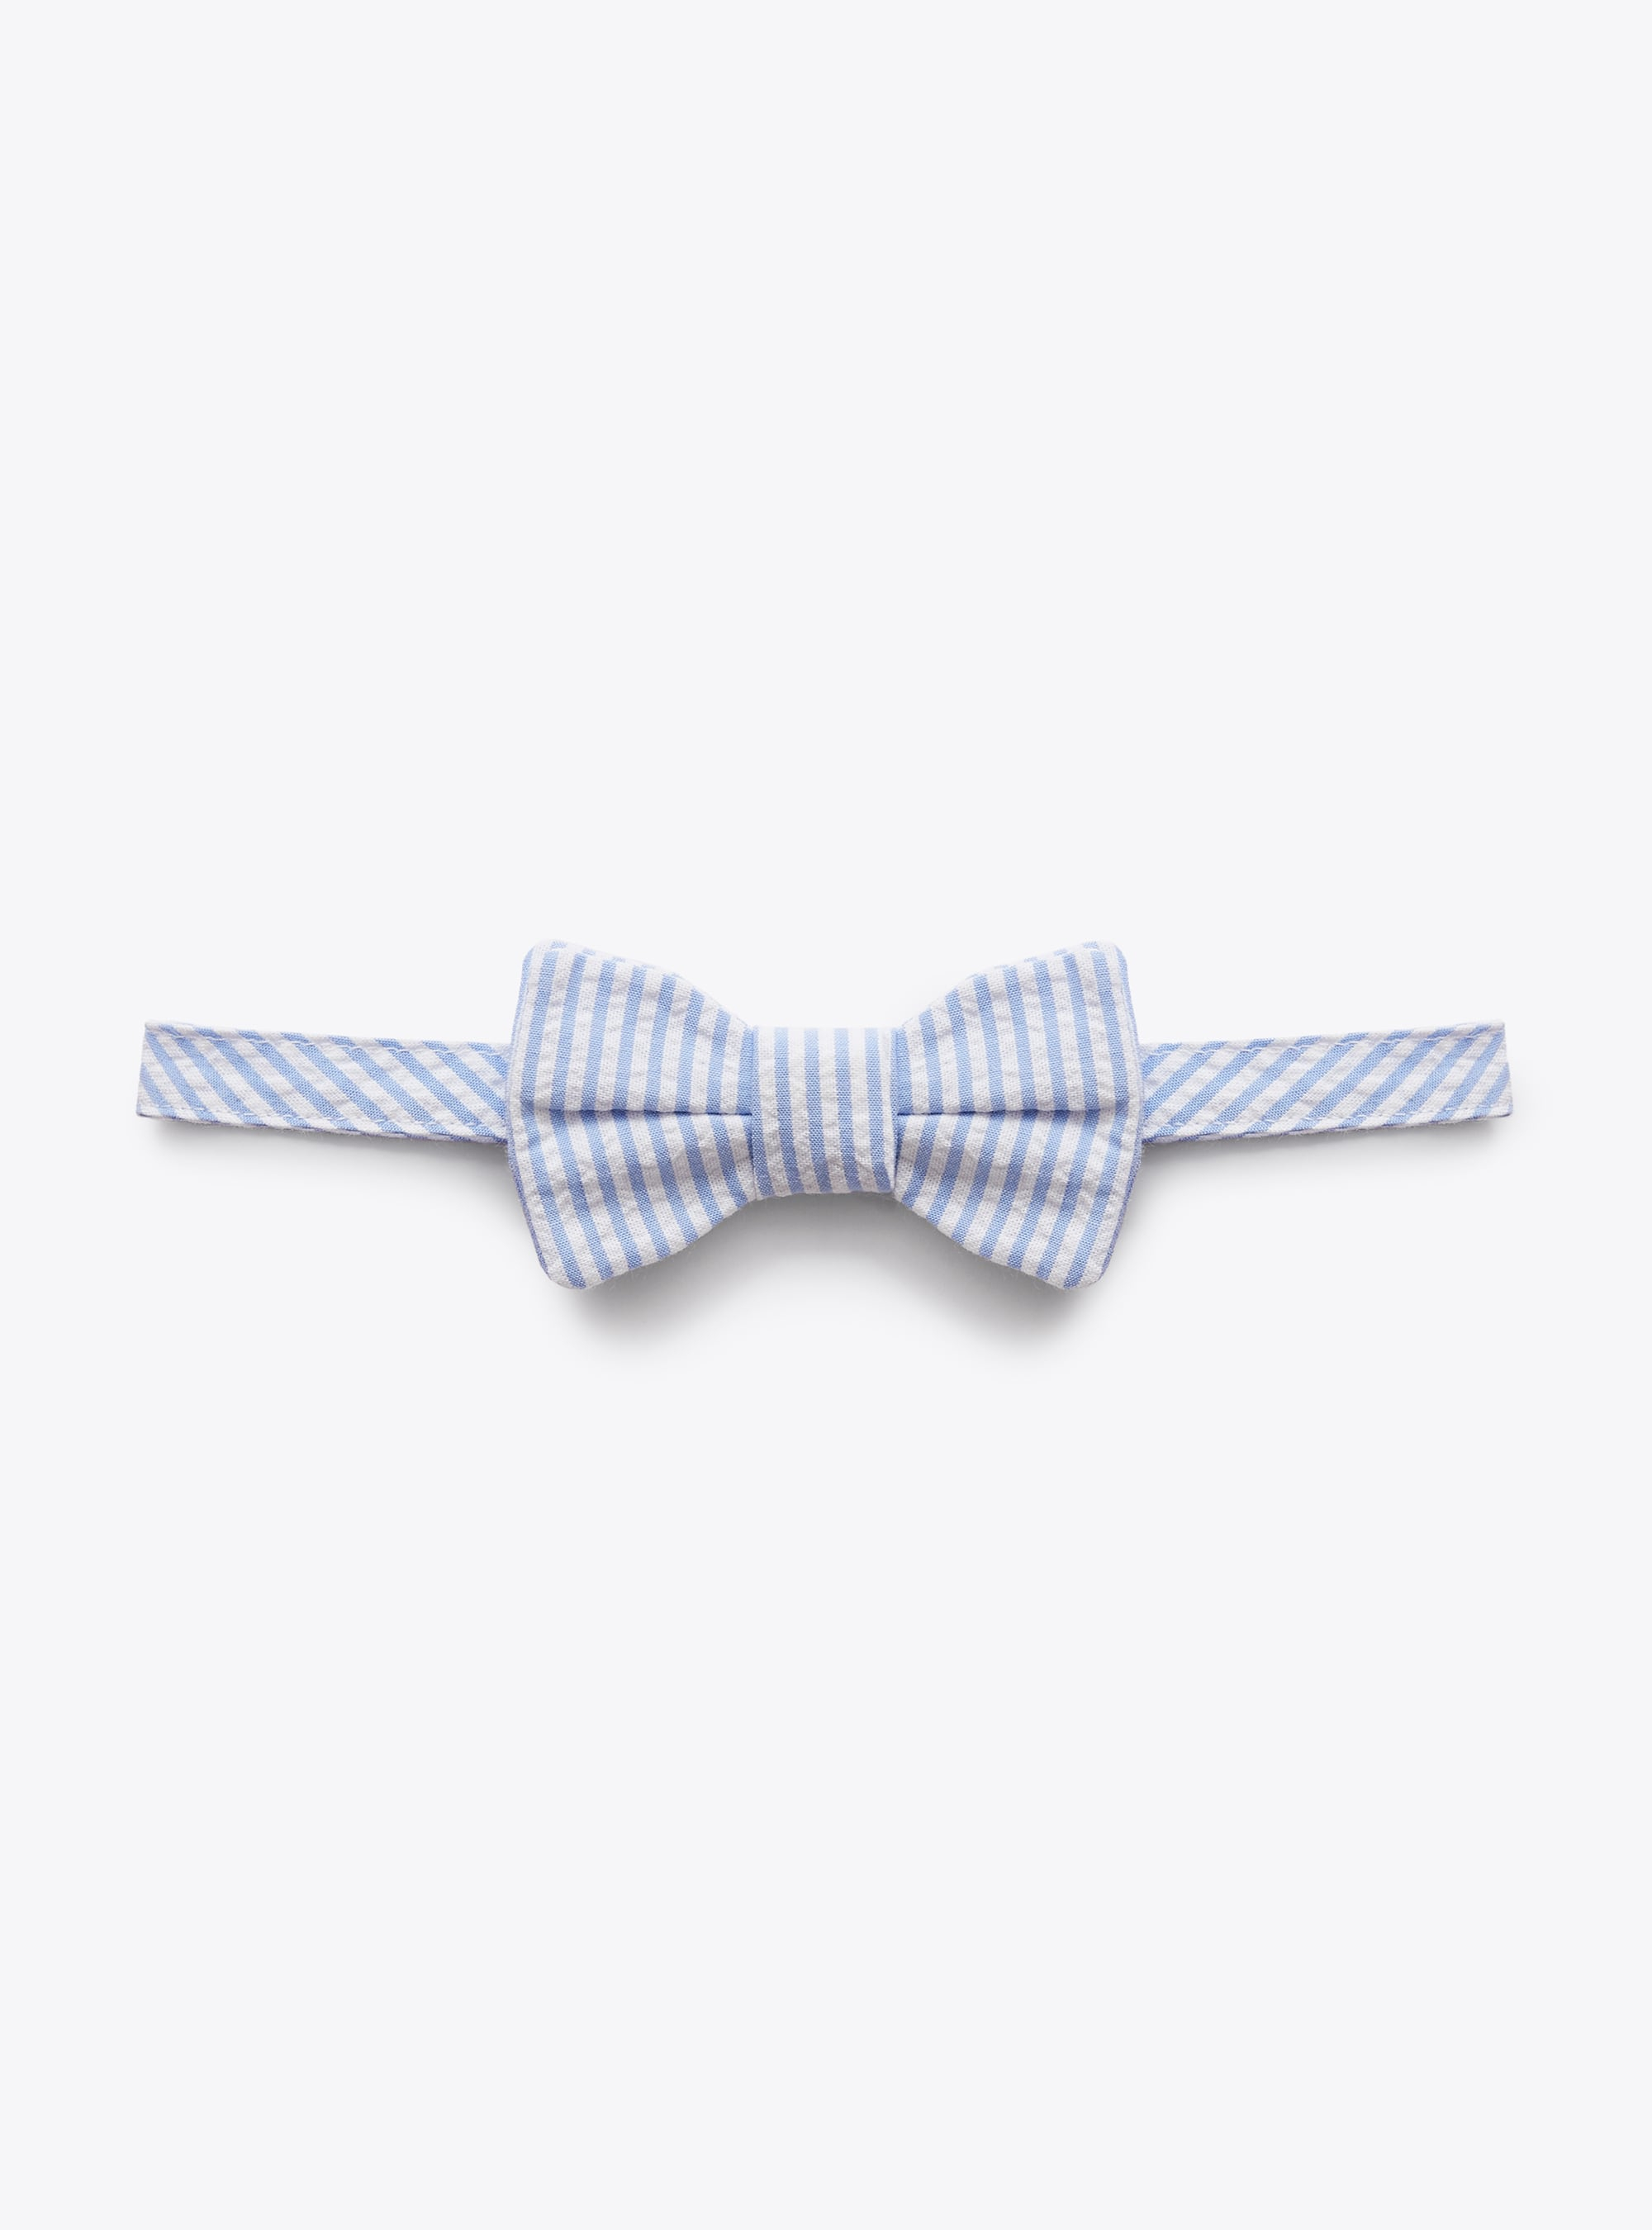 Bow tie in light-blue-striped seersucker - Light blue | Il Gufo